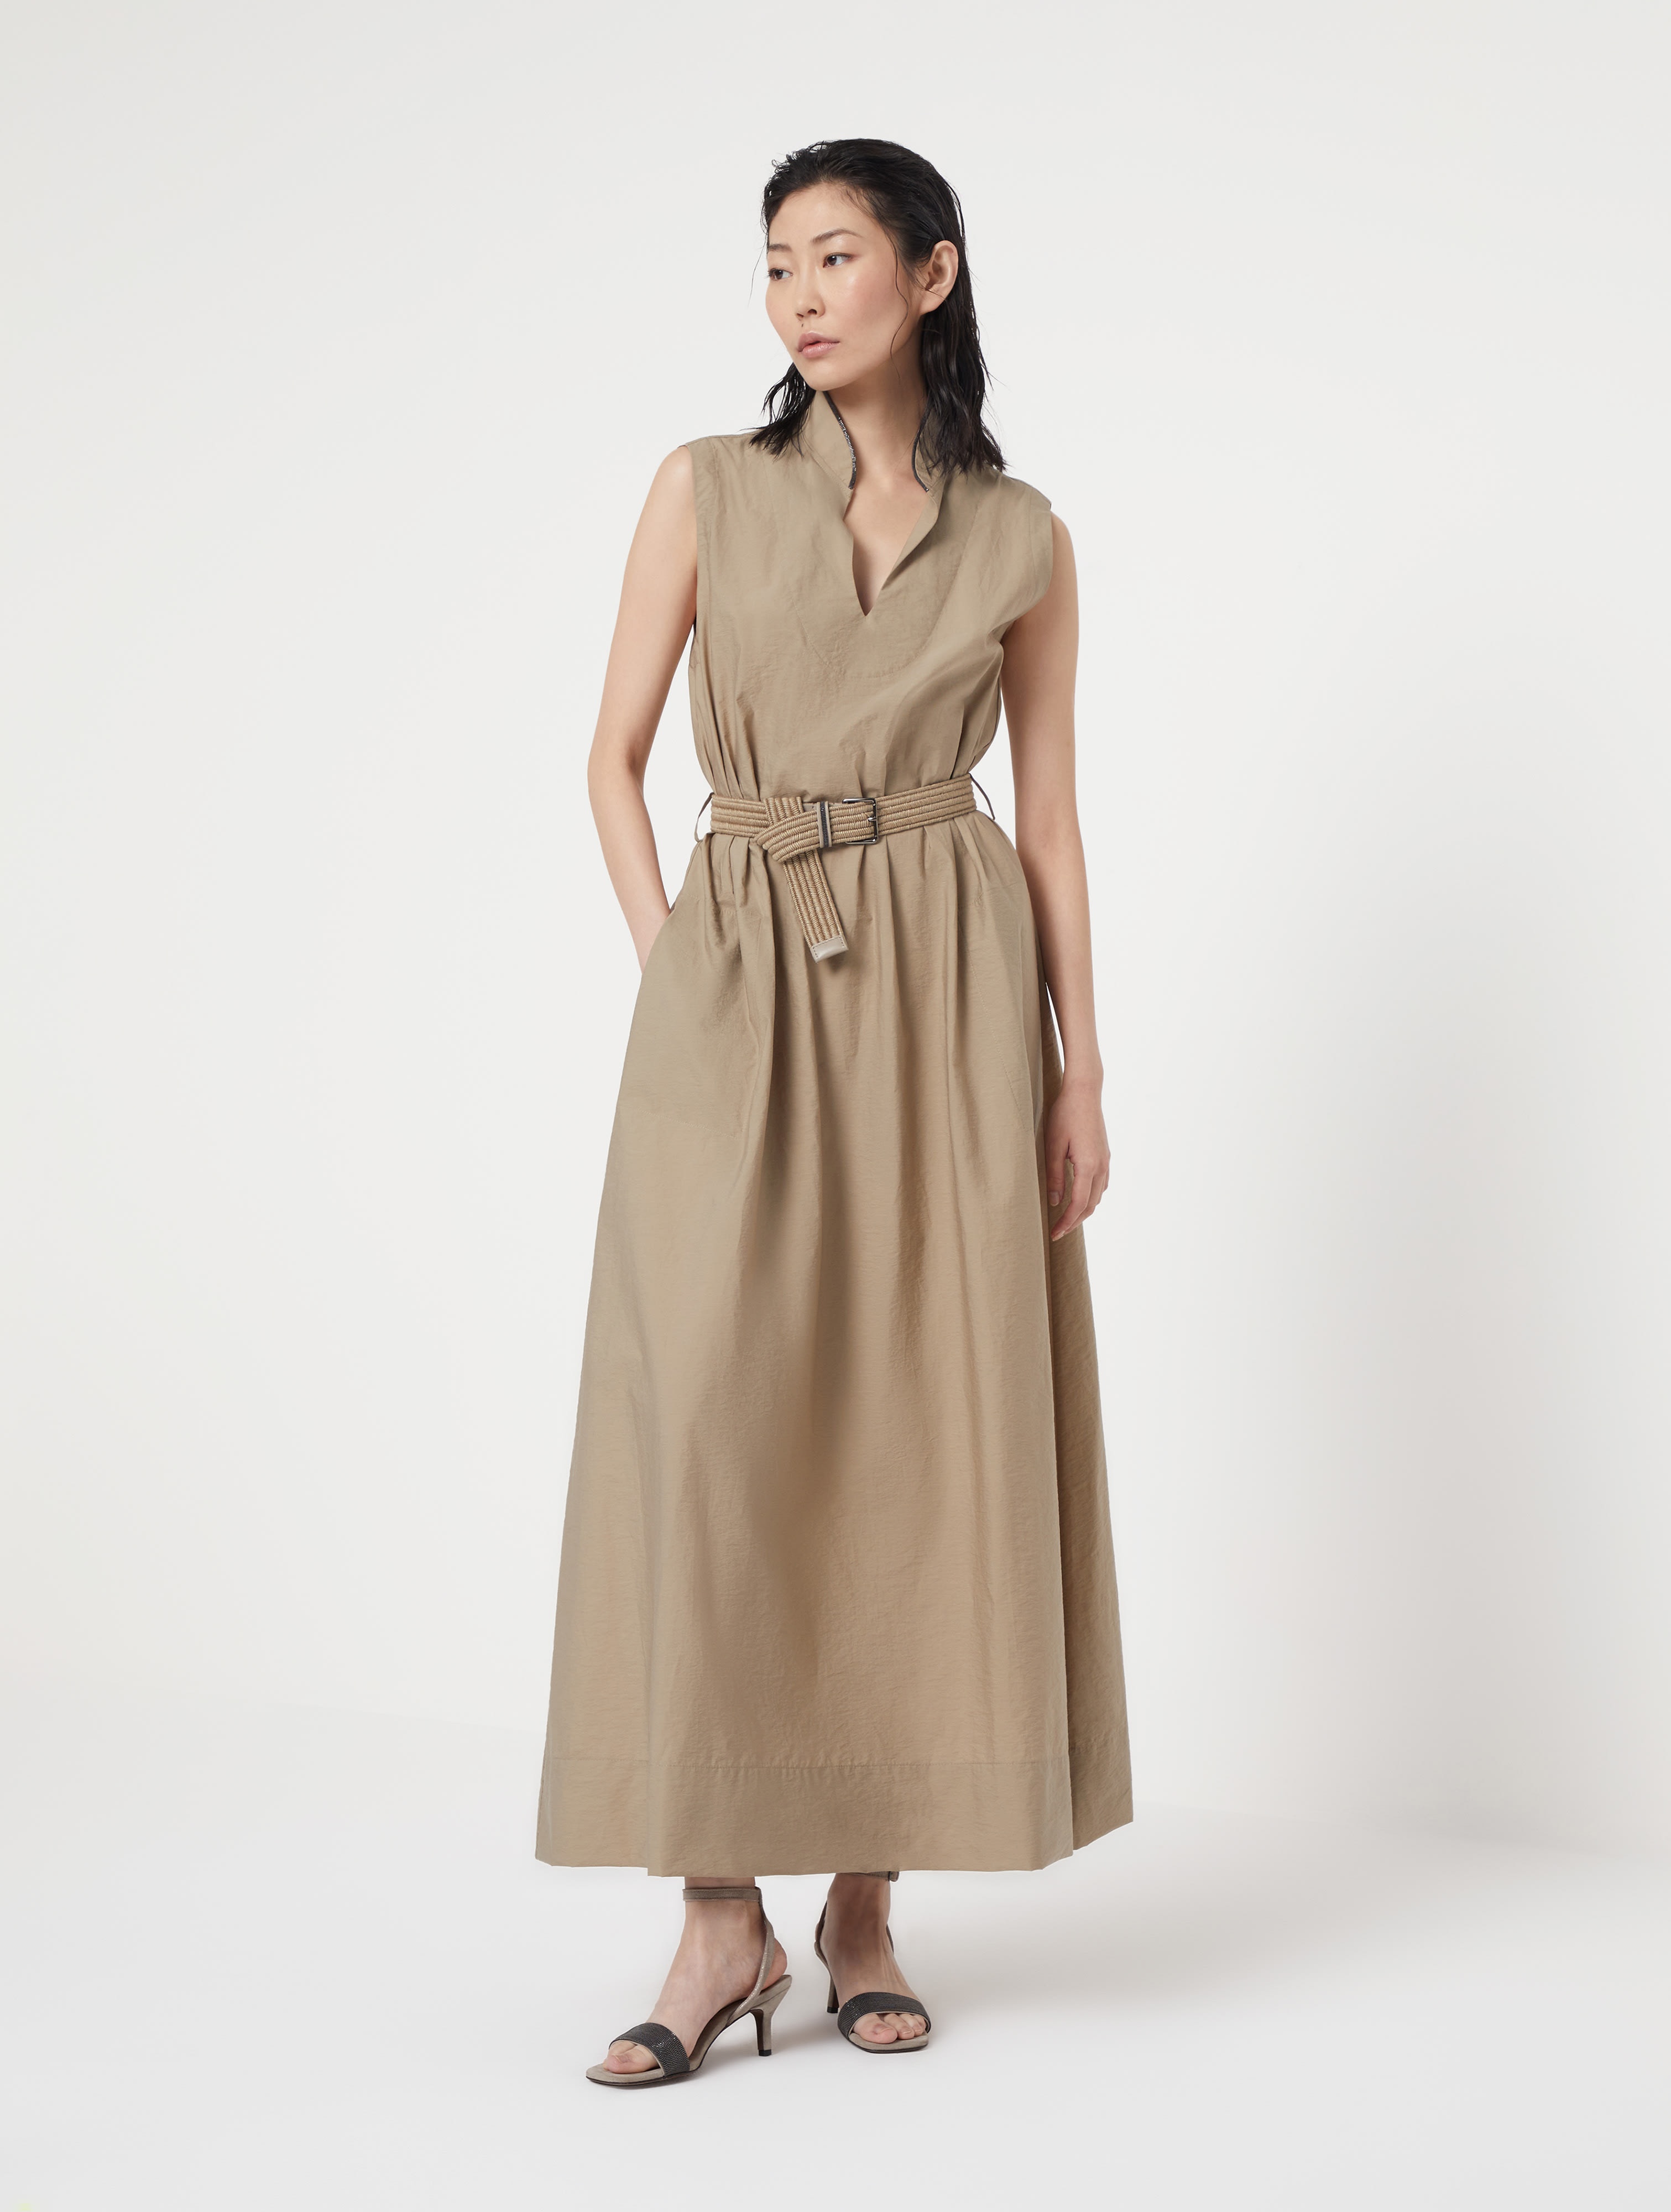 Techno cotton poplin dress with raffia belt and shiny trim - 1